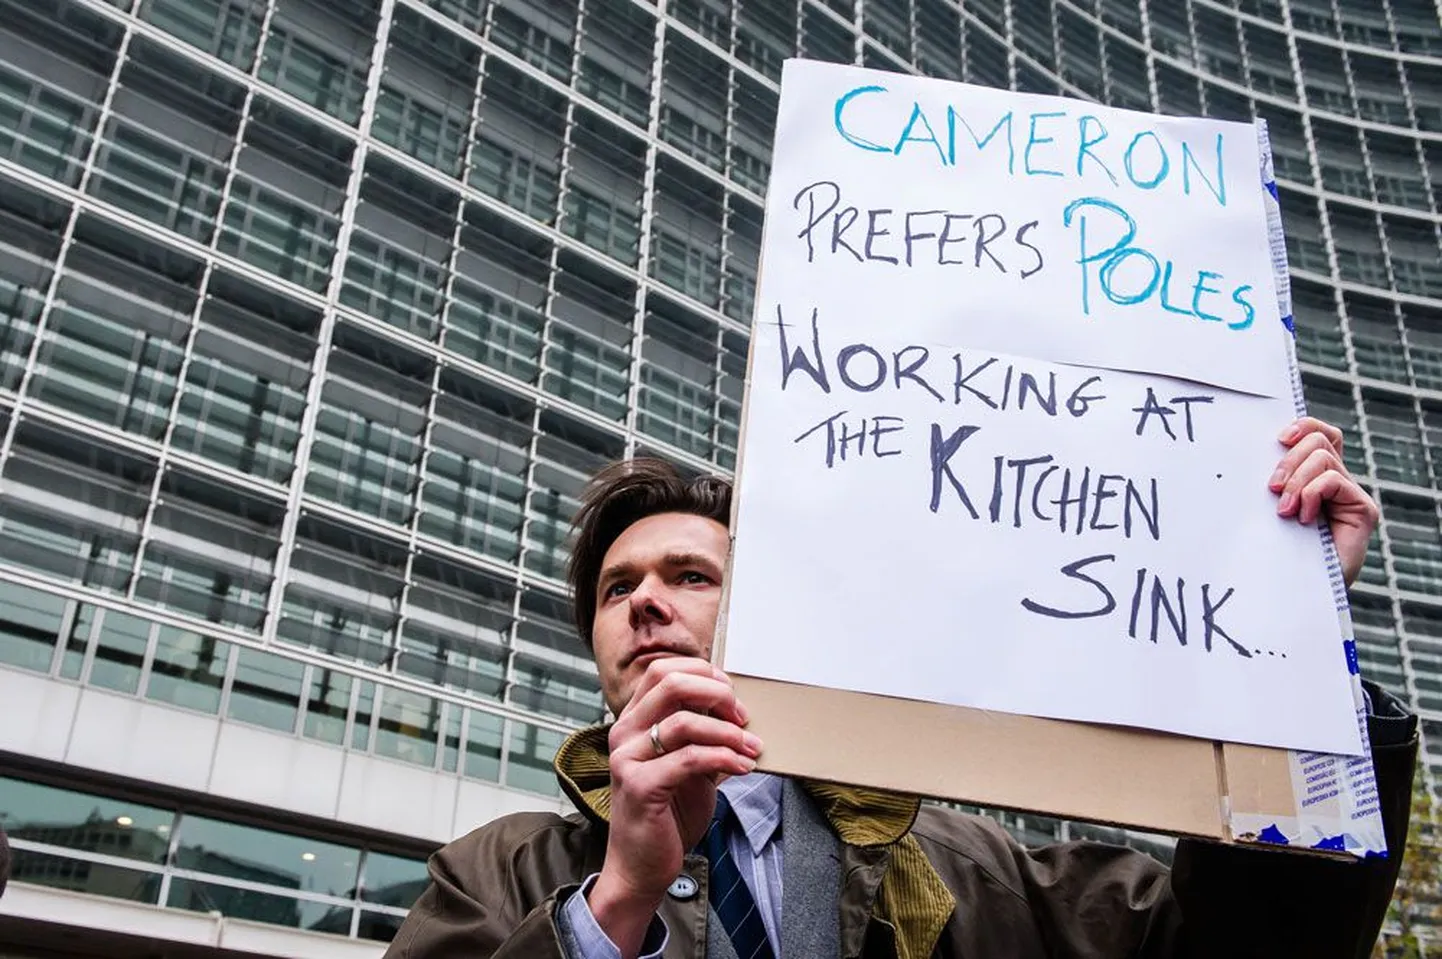 Eile toimus Brüsselis ülemkogu eel solidaarsust ehk Eesti-suguseid riike toetav meeleavaldus. Pildil olev plakat meeleavaldaja käes teatab viitega Briti peaministrile David Cameronile: «Cameron eelistab, kui poolakad töötavad kraanikausi kohal.»